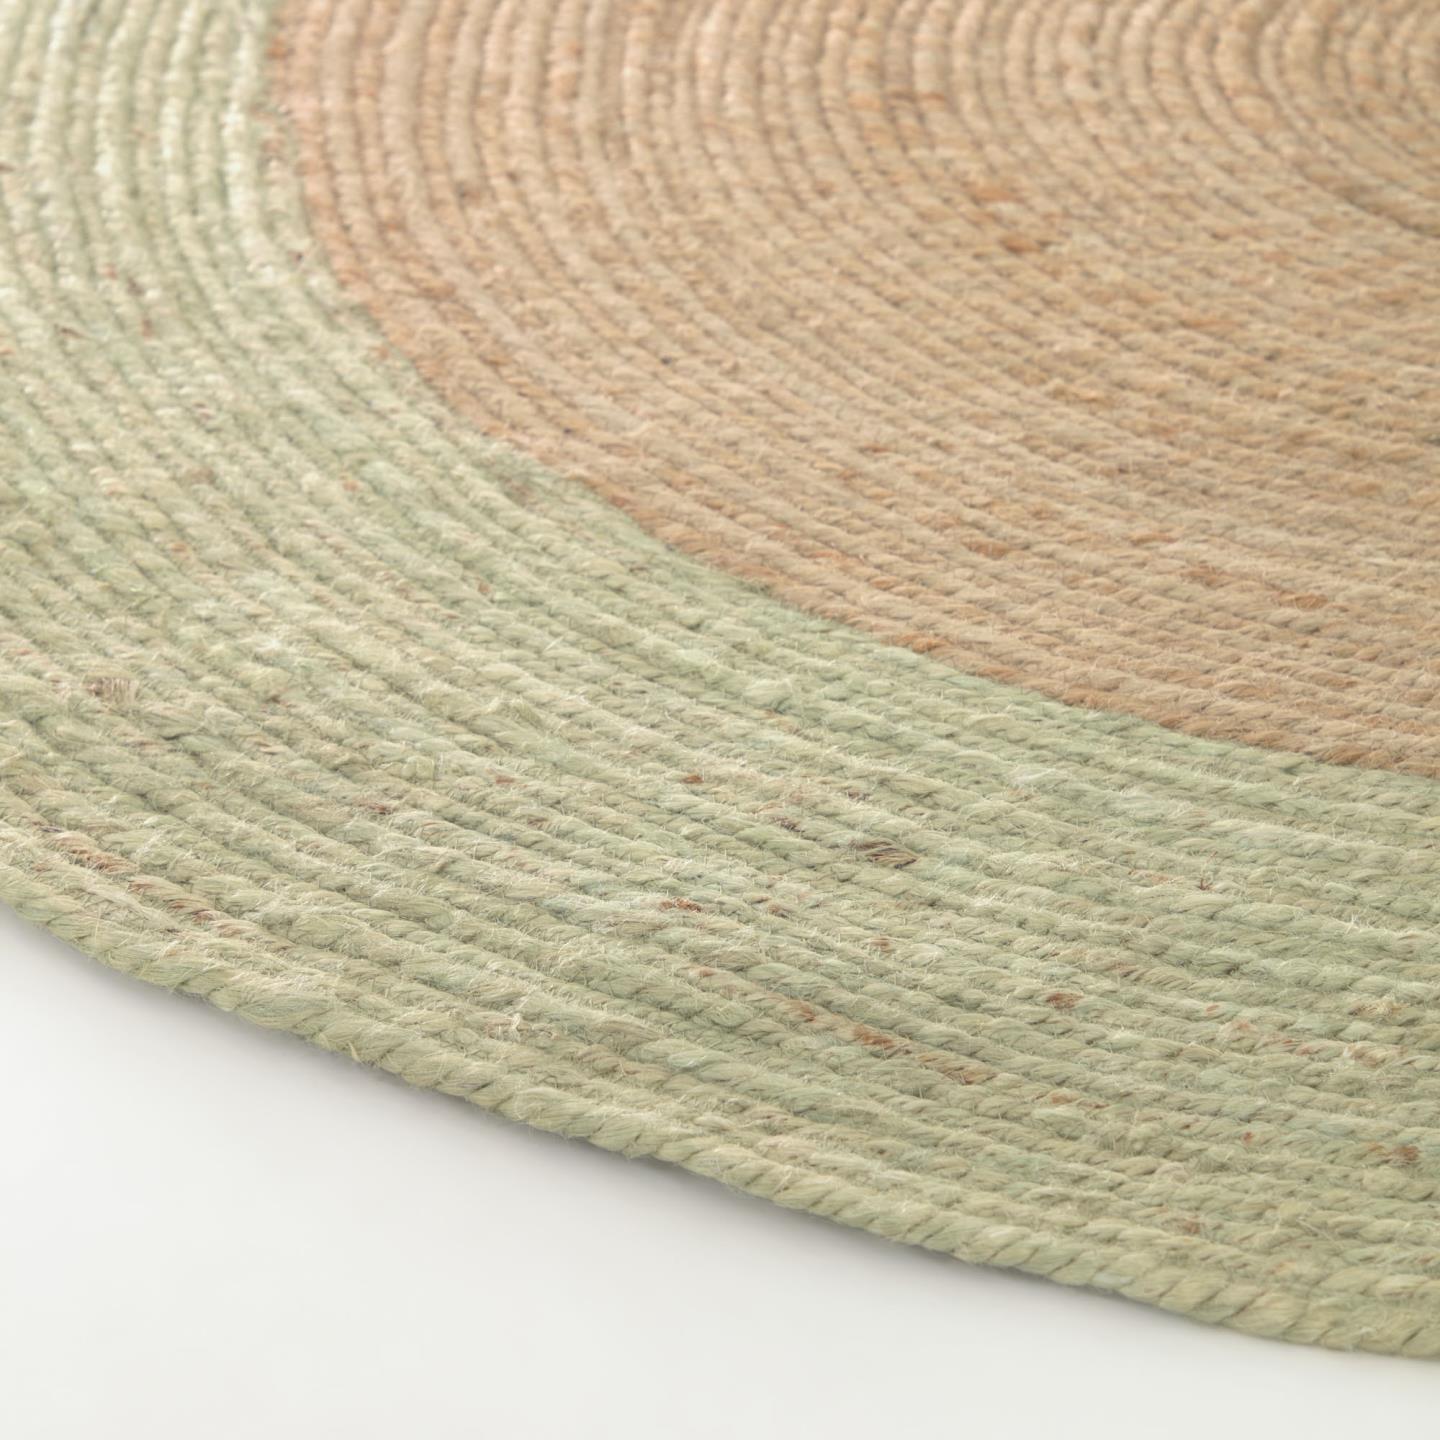 Kave Home Adabel runder Teppich aus natürlicher Jute grün Ø 120 cm Natur, Grün- #AA7276FN20